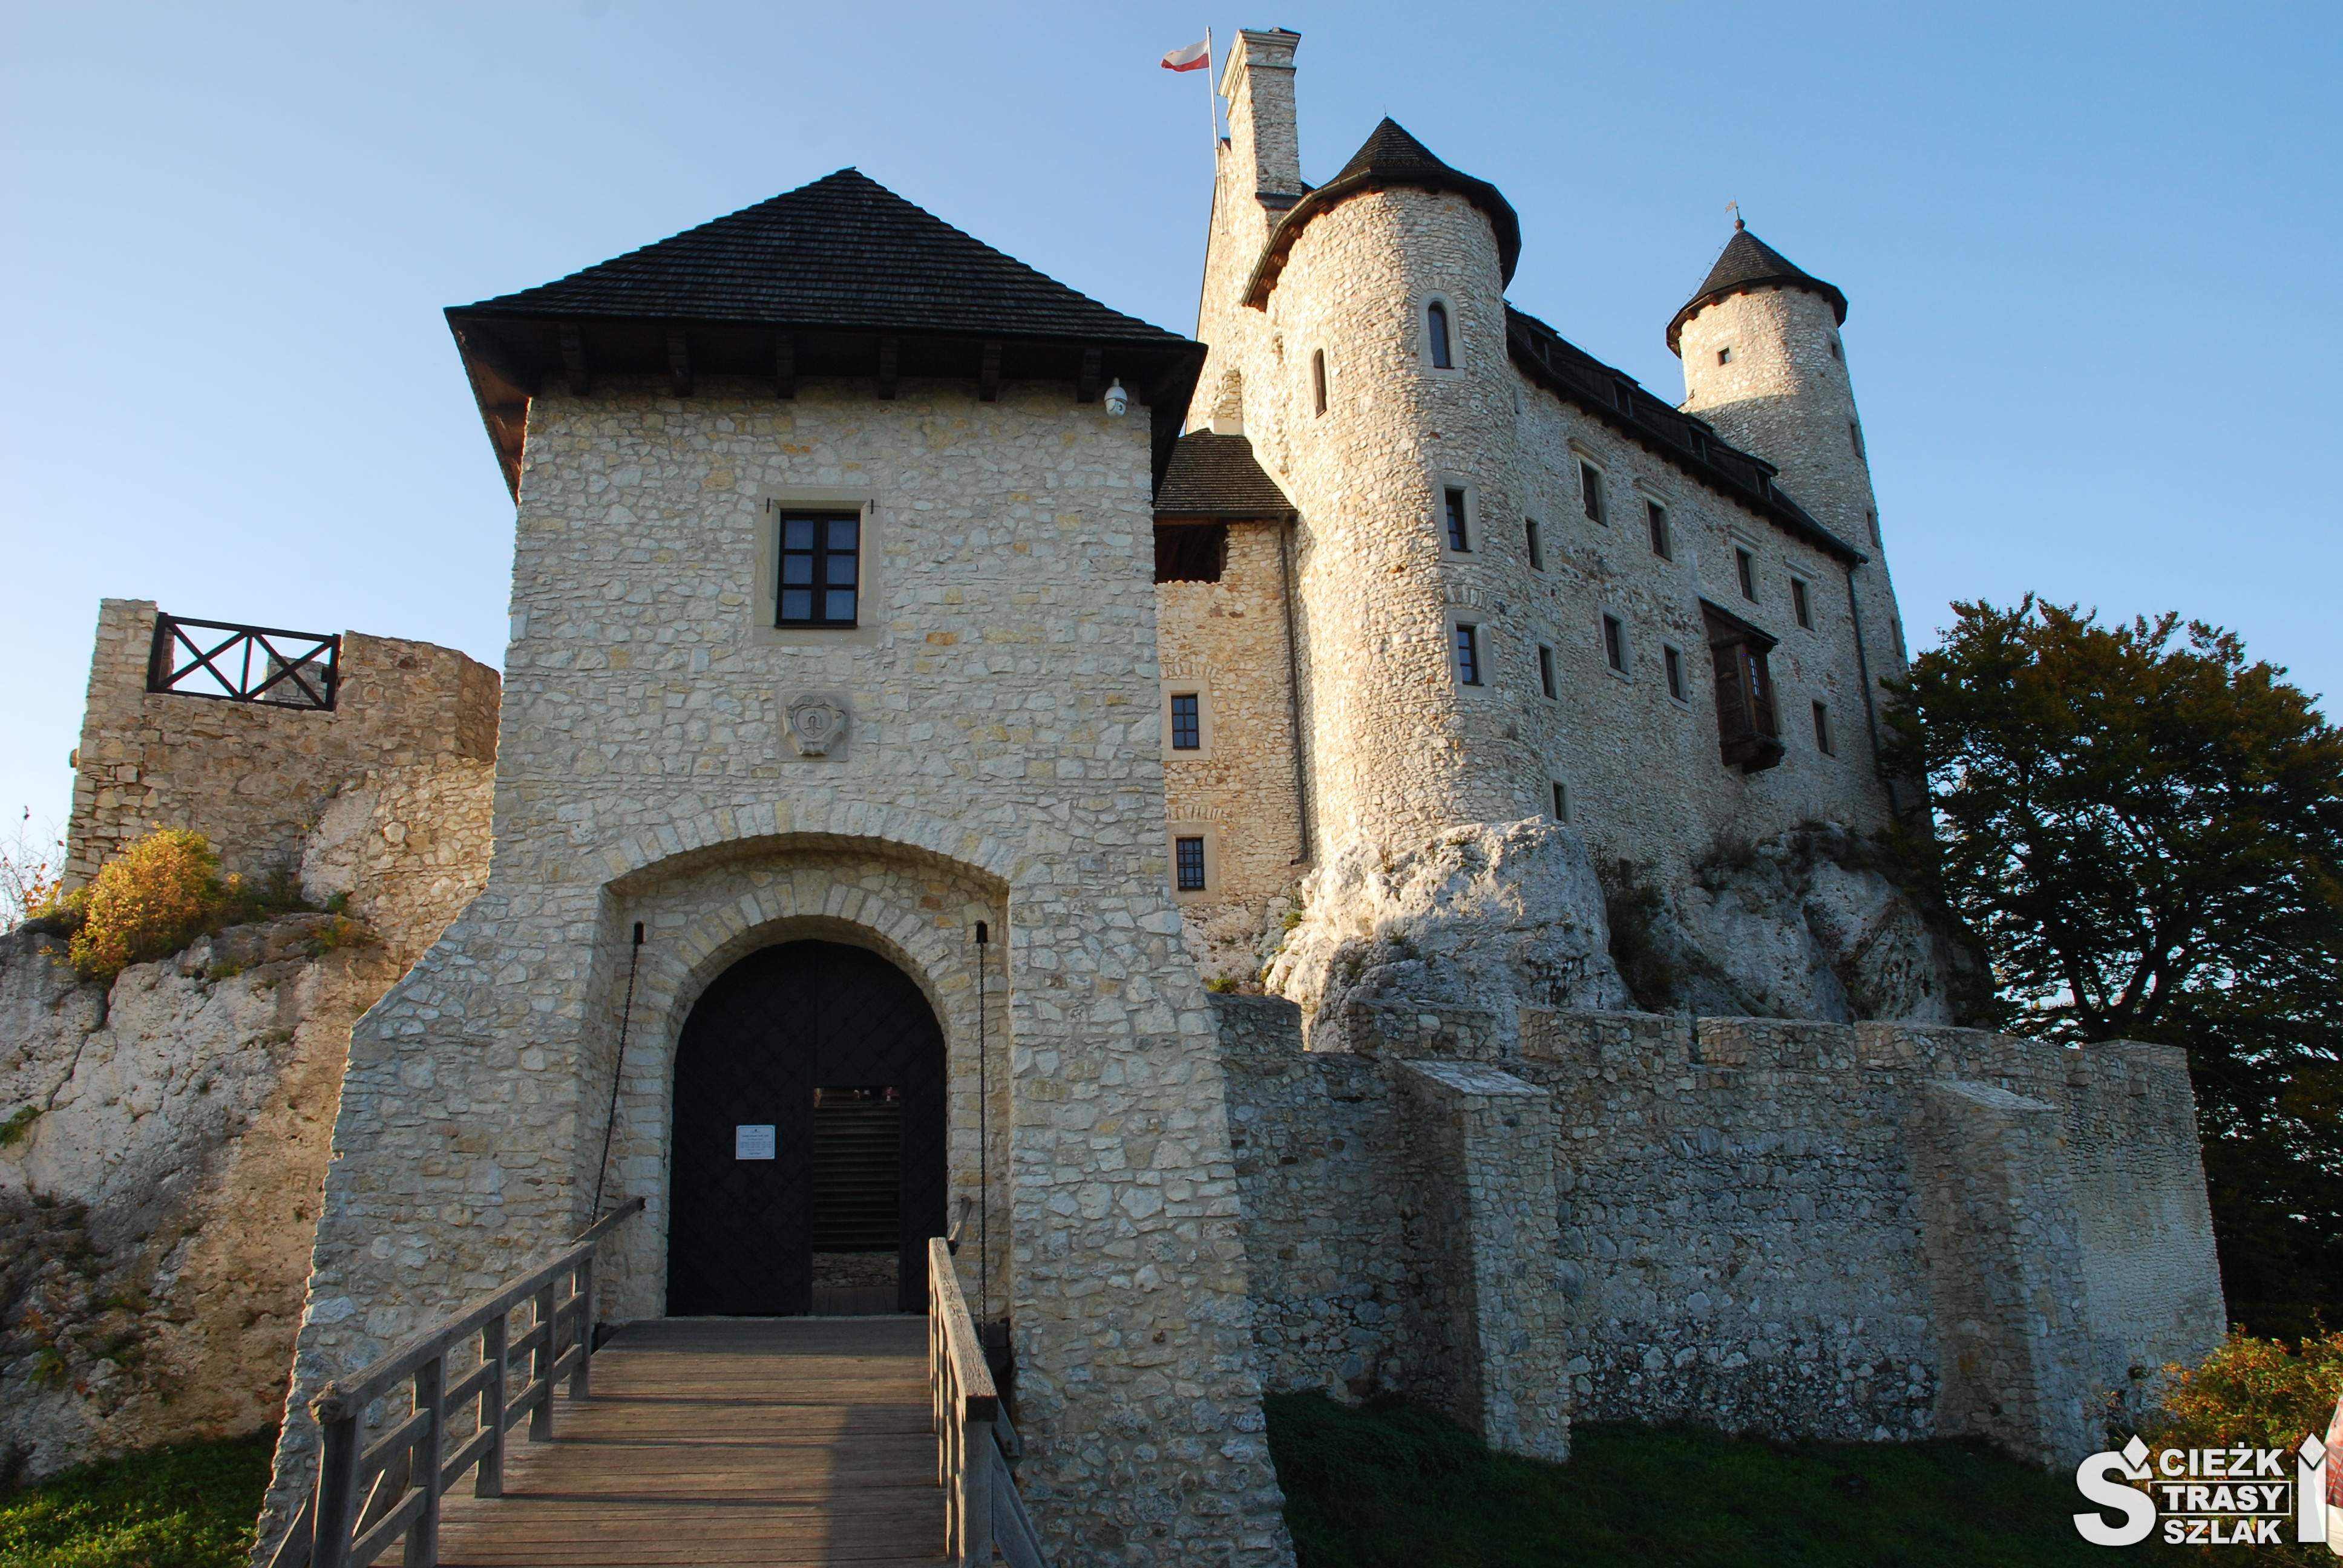 Odbudowany z ruin Zamek w Bobolicach wzniesiony na skale wapiennej od strony budynku bramnego z mostem zwodzonym